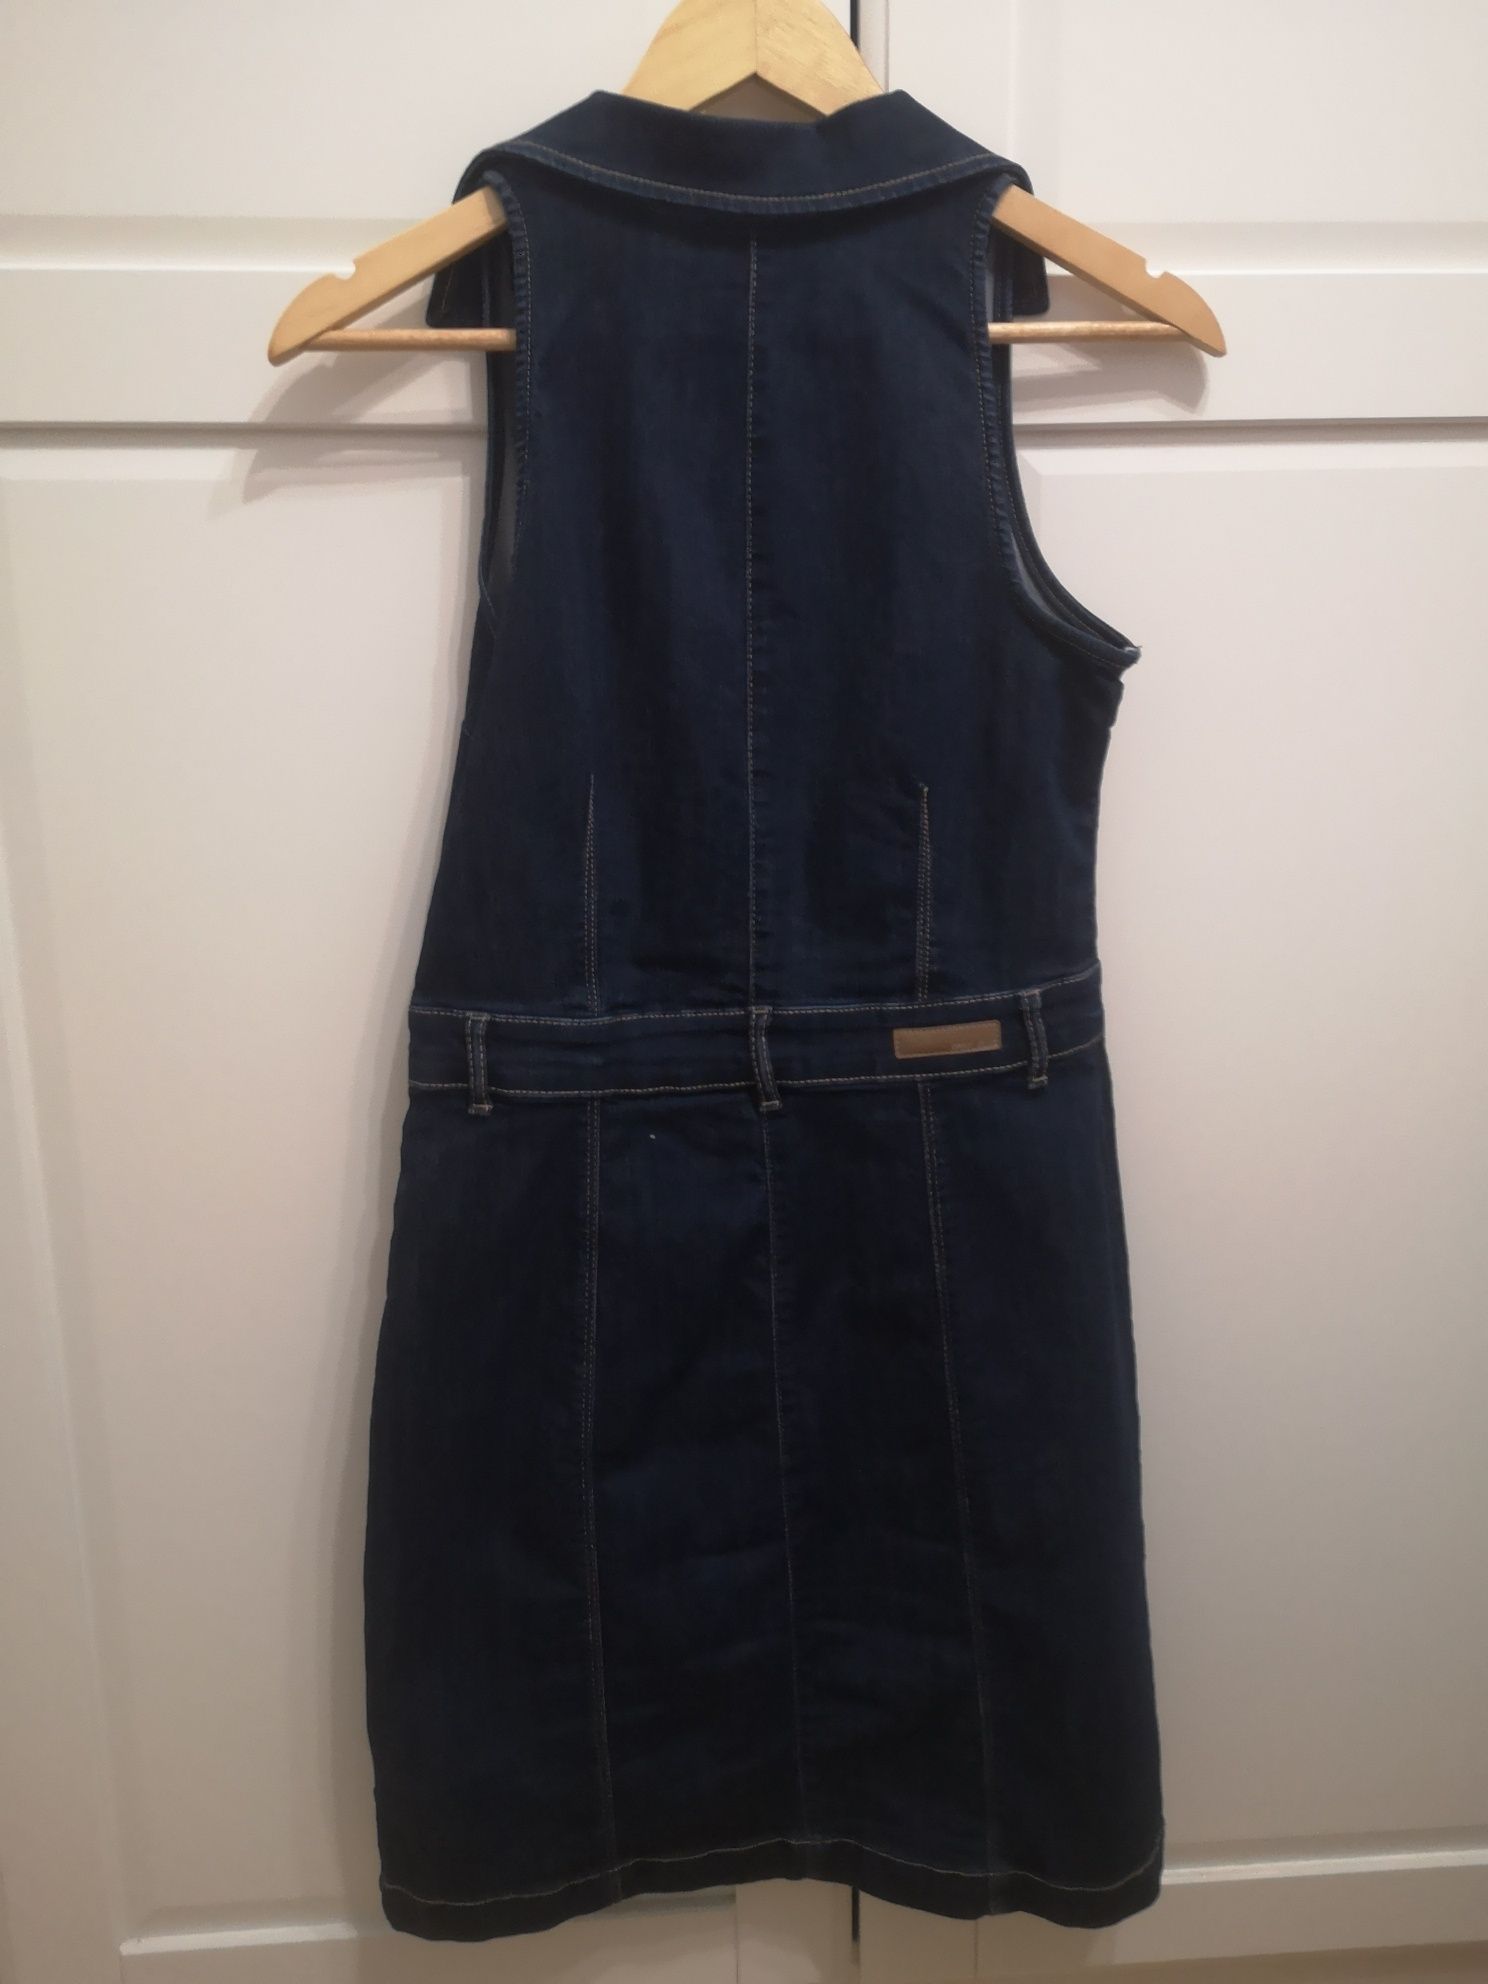 Jeansowa sukienka bez rękawów zapinana na guziki marki Orsay r 36